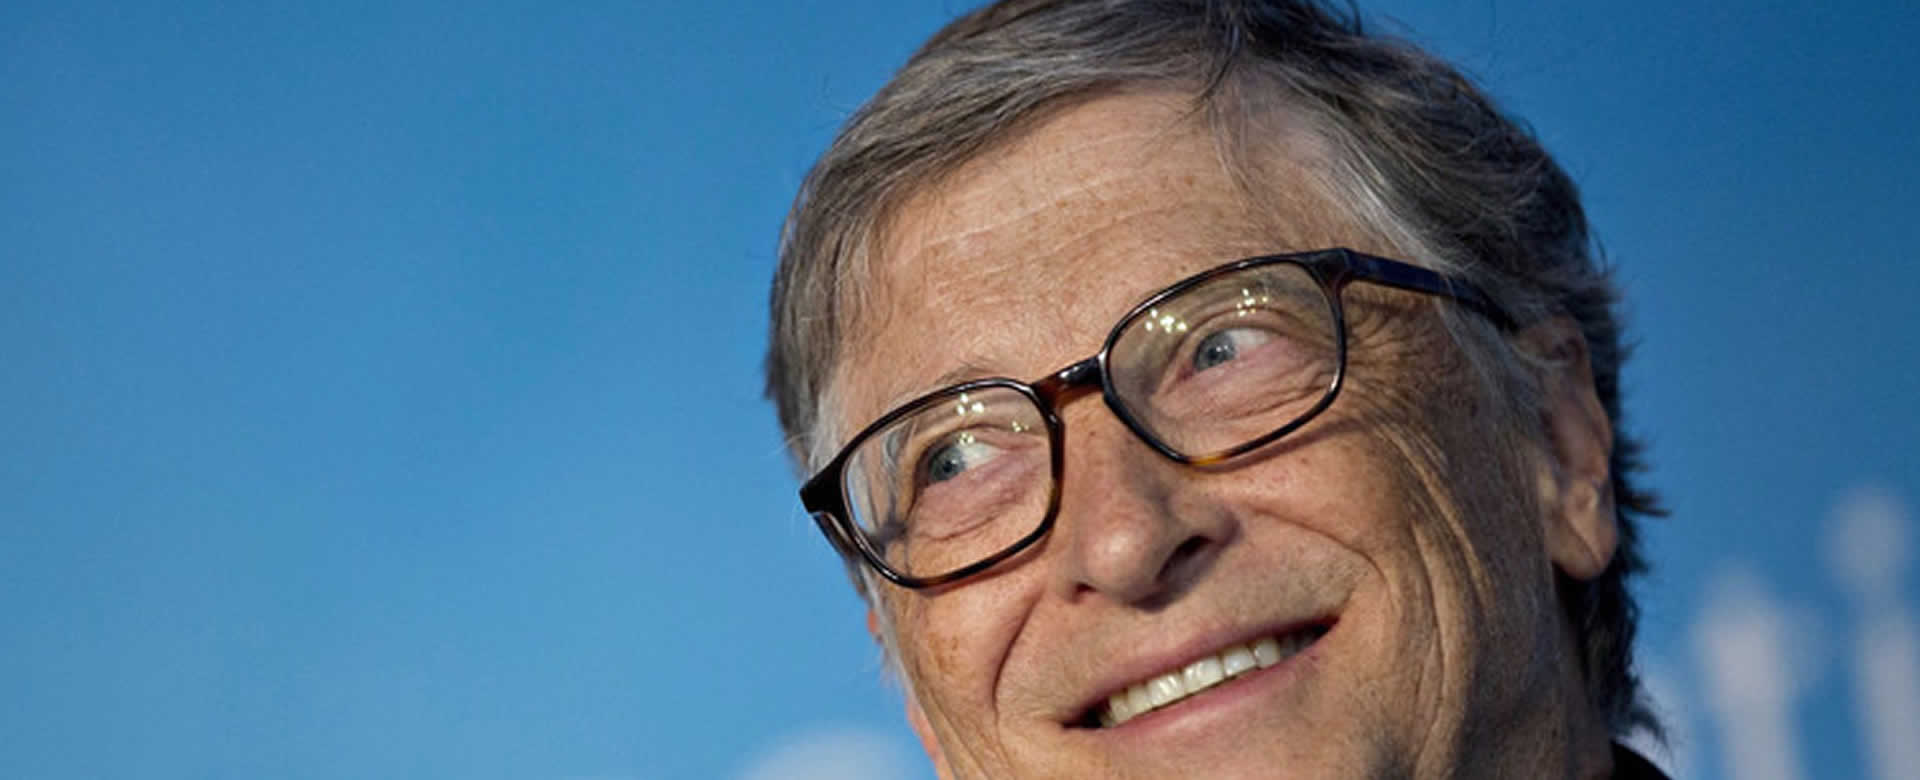 Bill Gates vuelve al primer lugar de personas más ricas del mundo